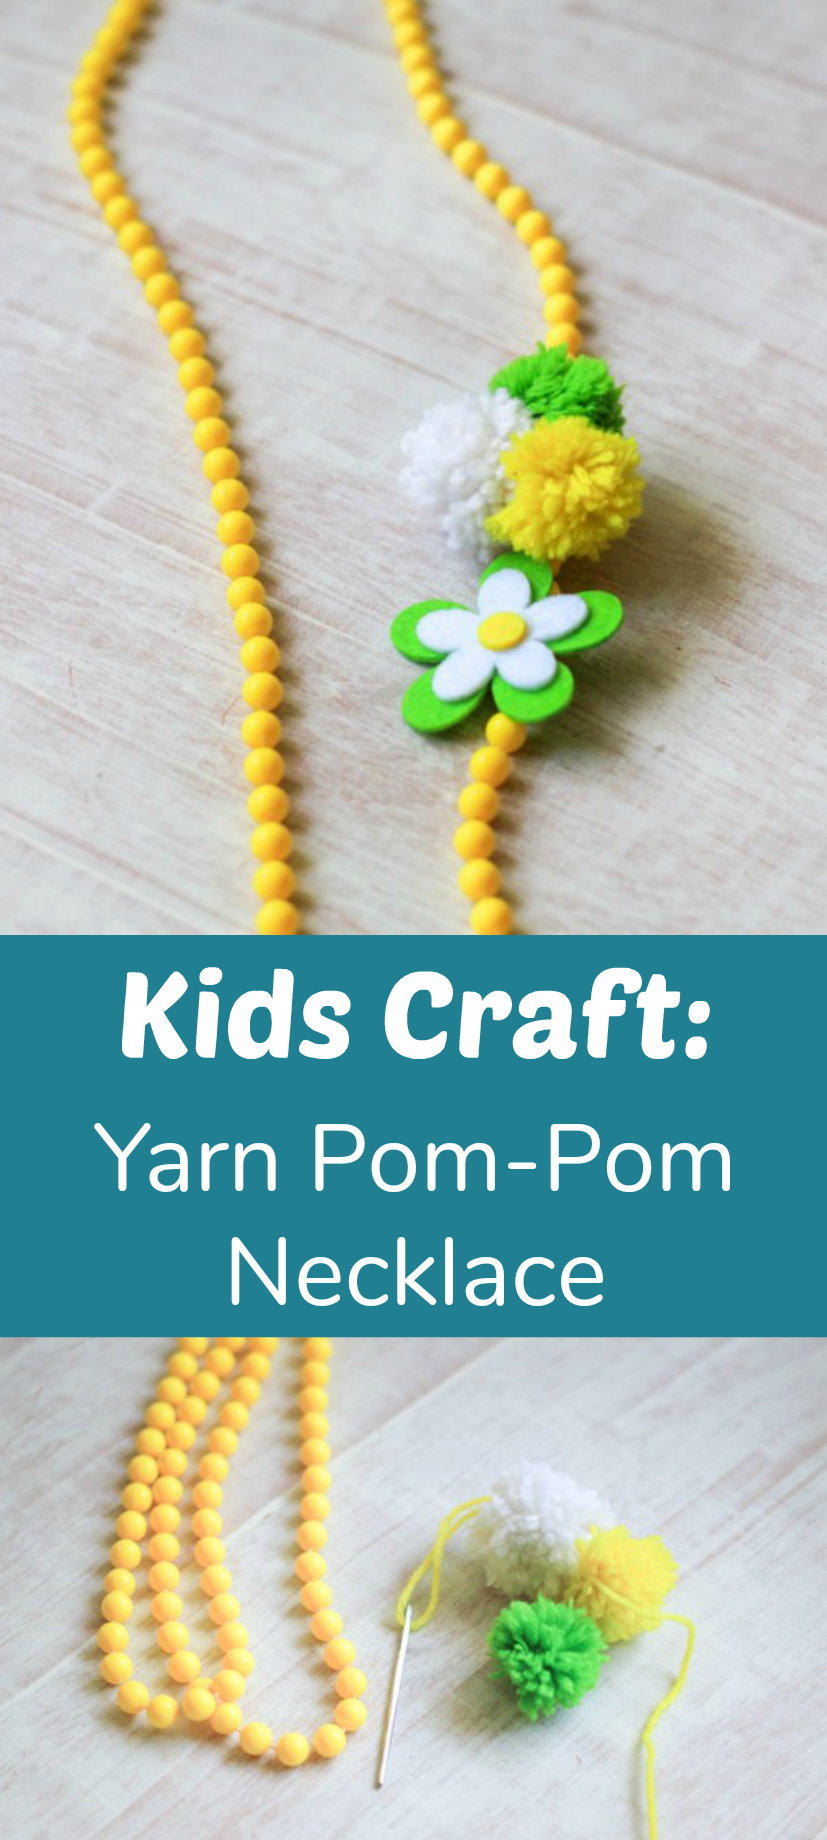 Kids Craft yarn pom-pom necklace